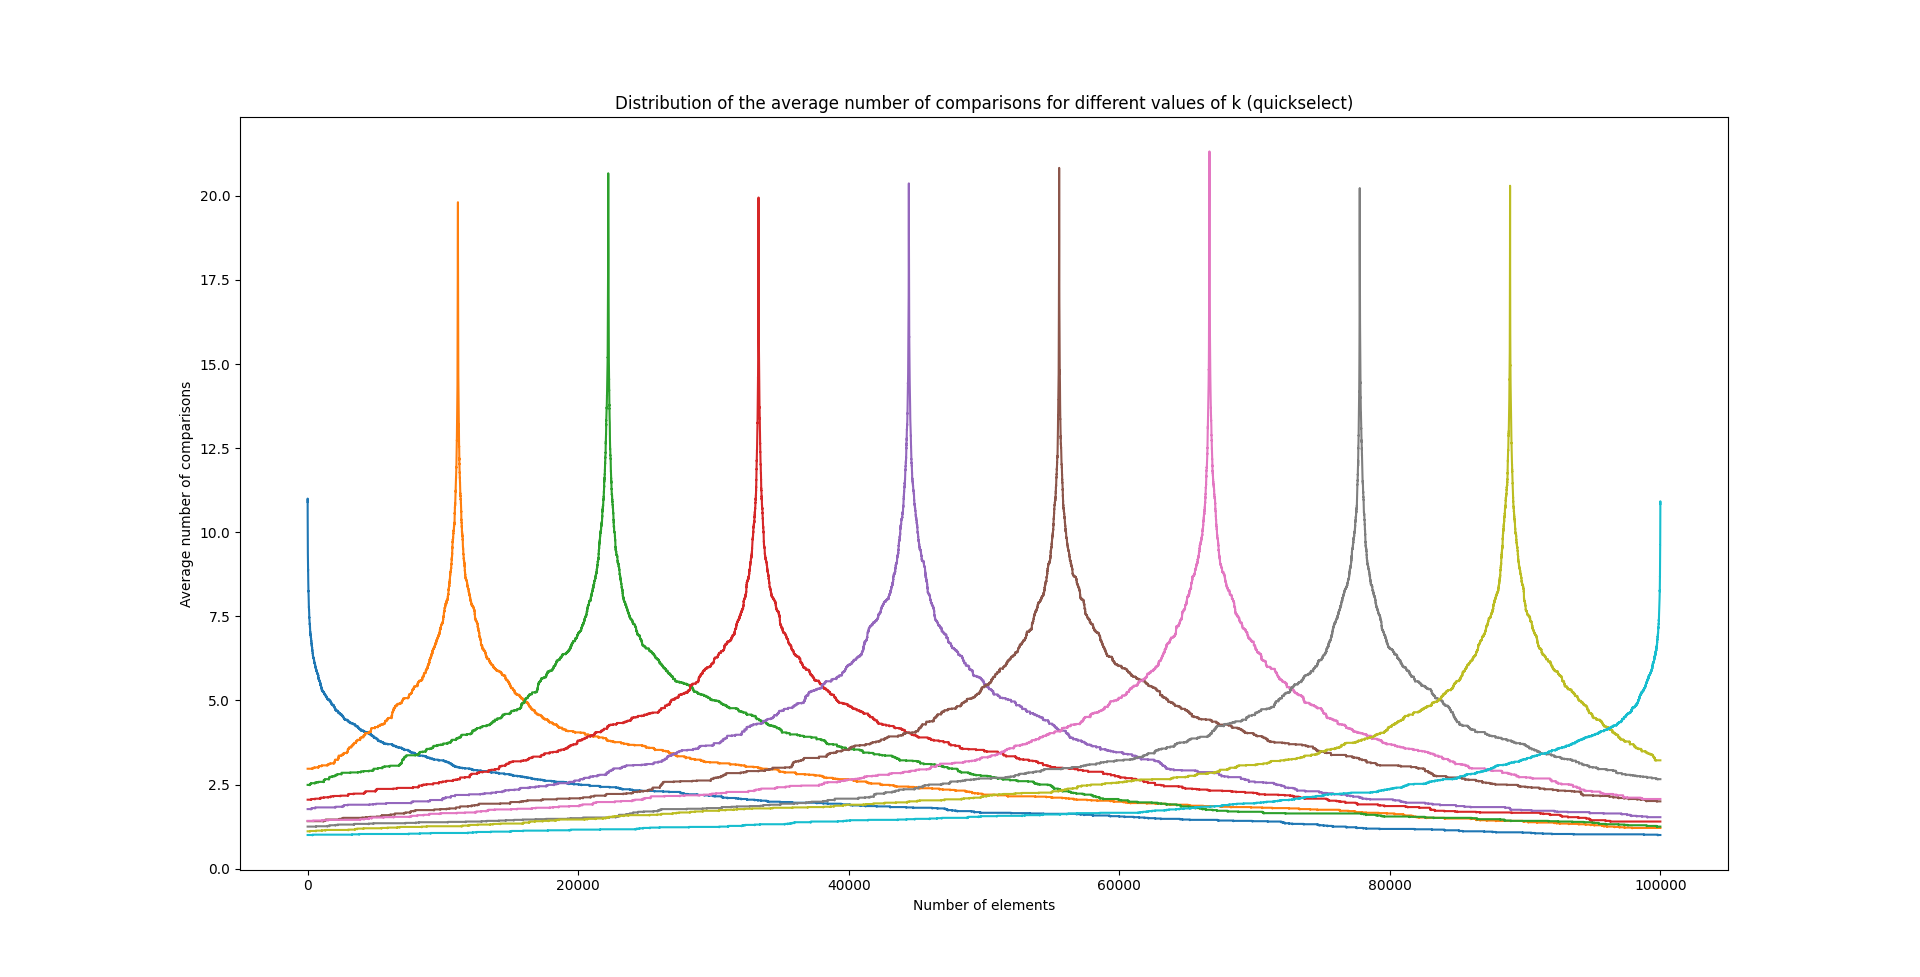 Distribution du nombre moyen de comparaisons pour Quickselect en fonction du rang, chaque couleur représente le choix d'un rang différent